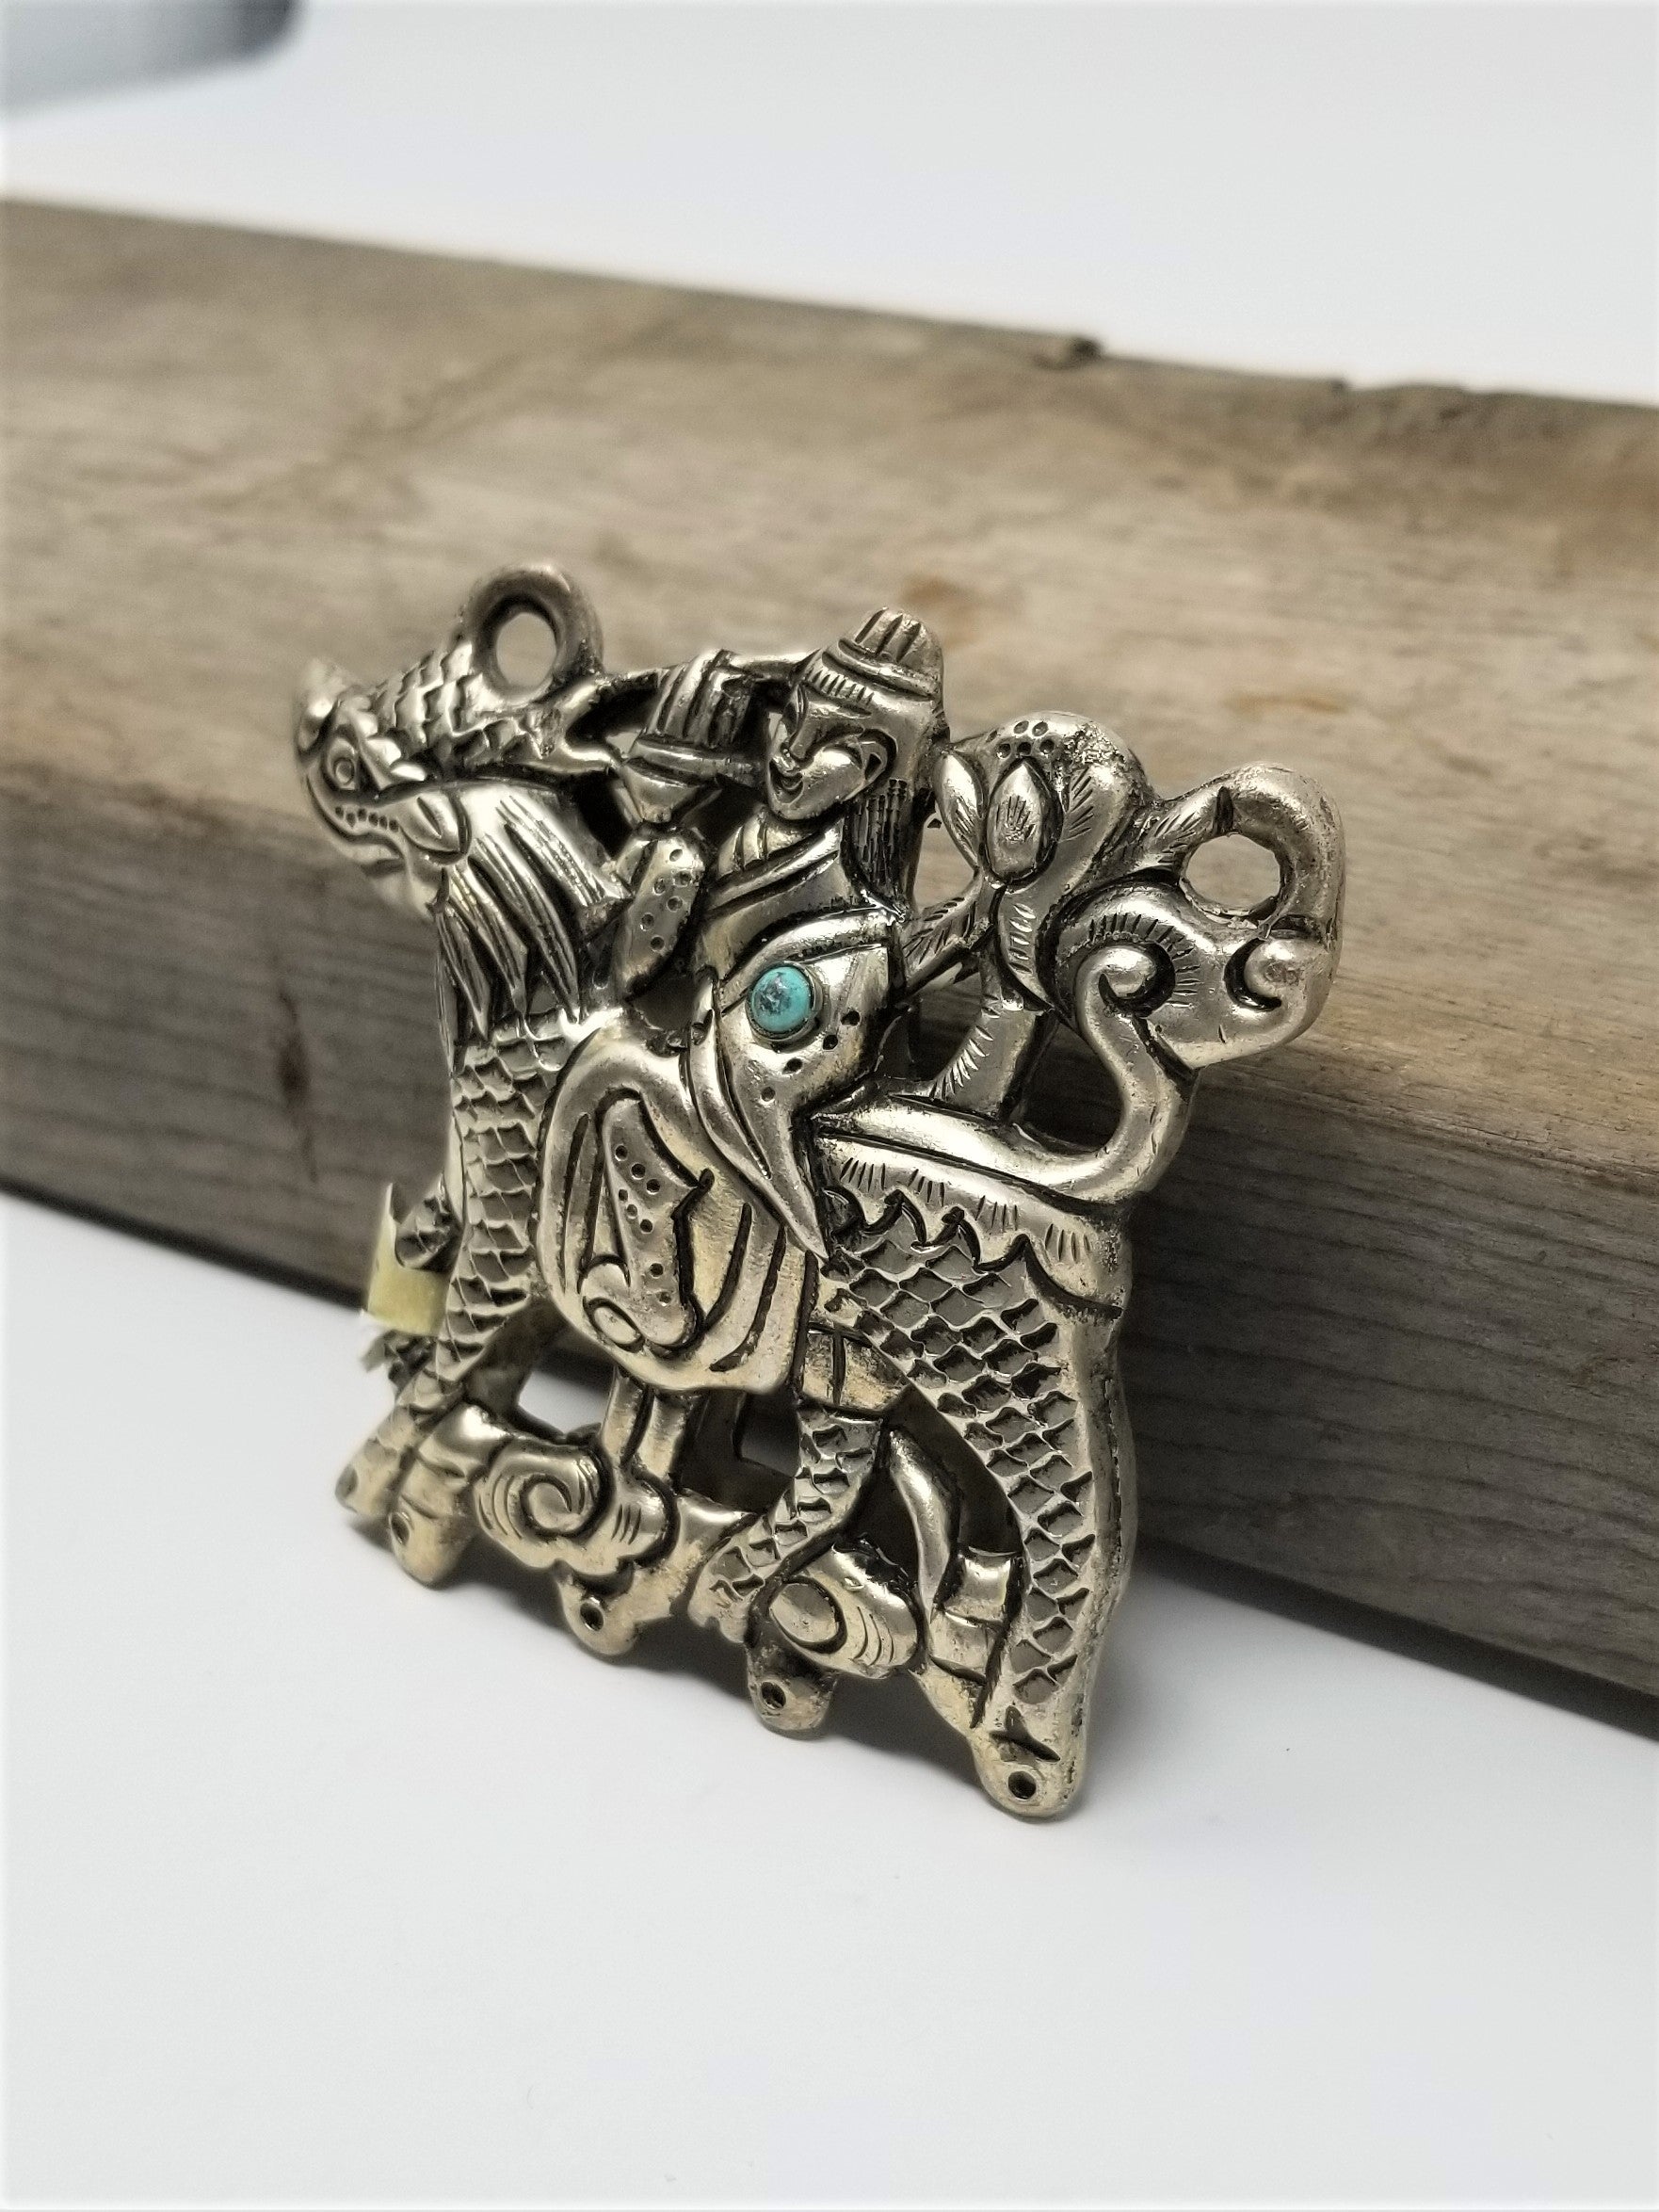 Vintage Pendant Necklace Man riding Dragon - Horse Unique